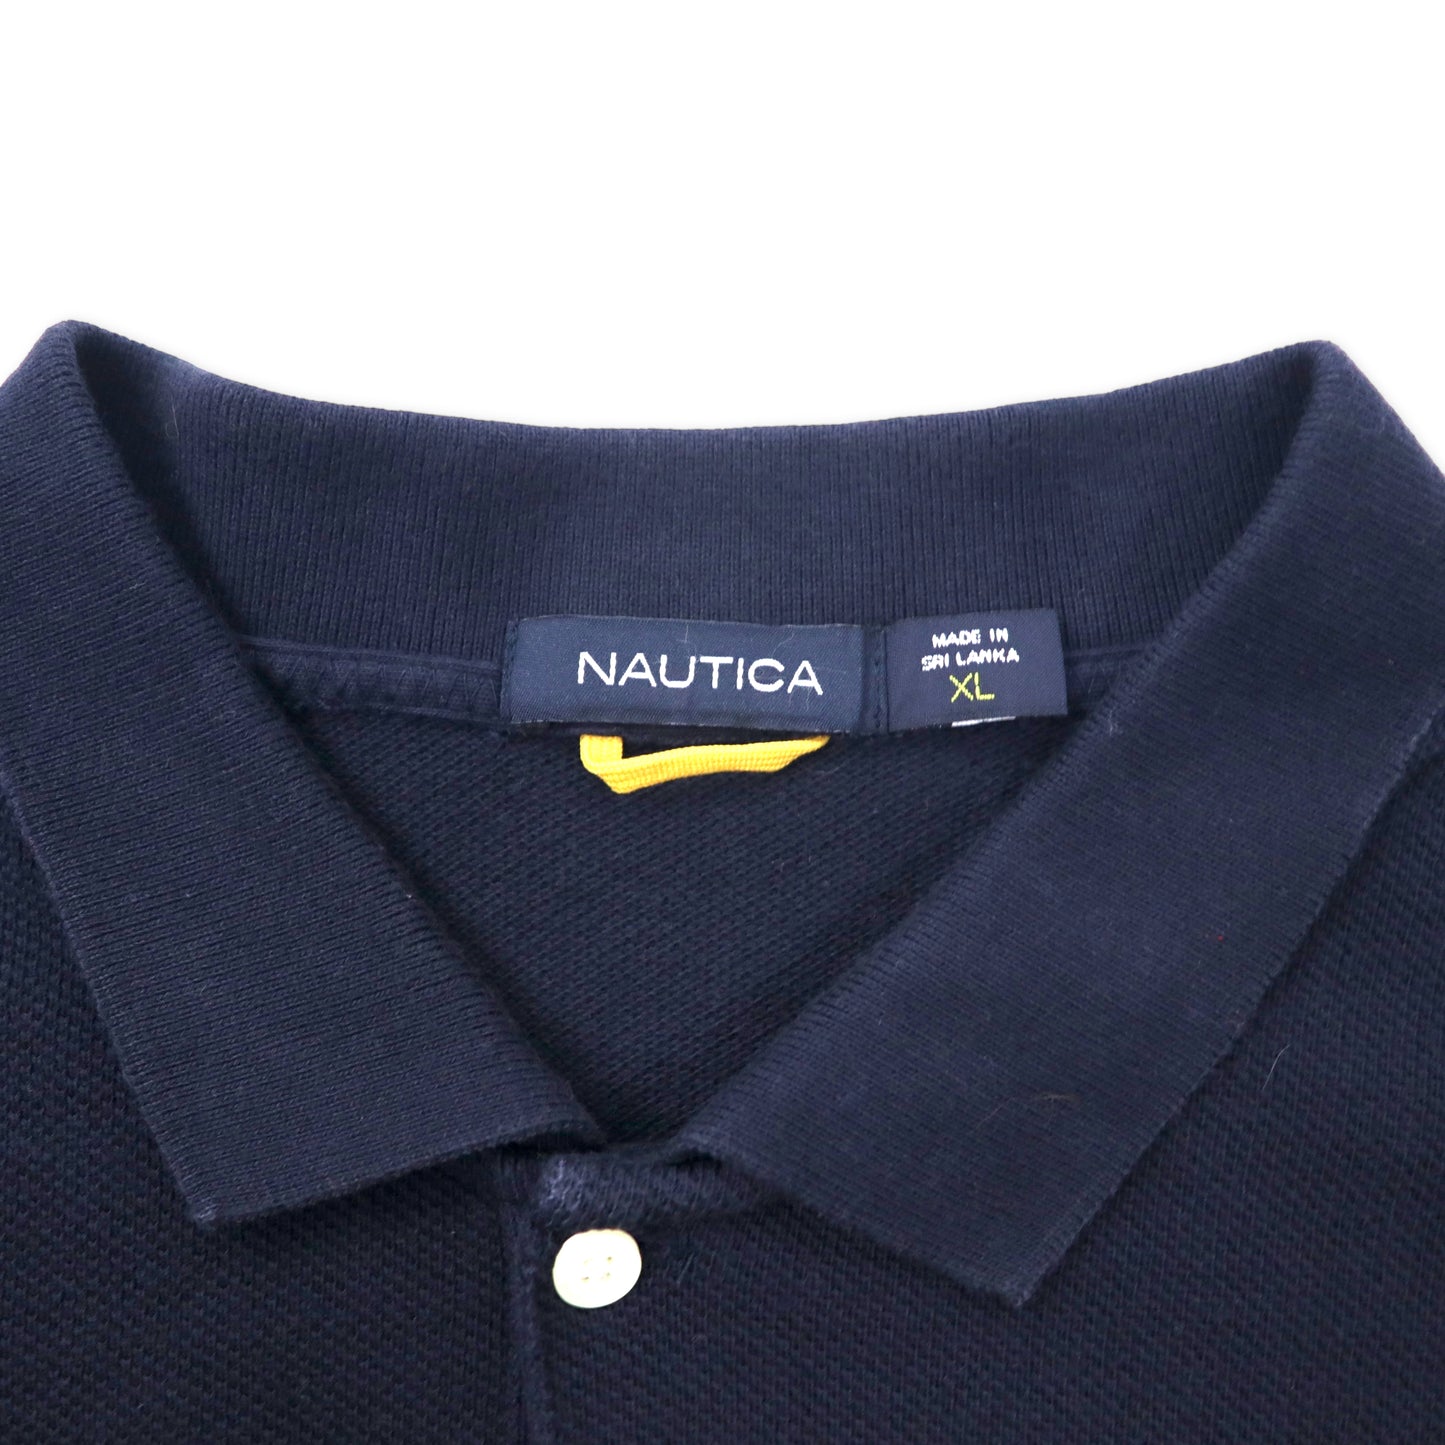 NAUTICA 長袖ポロシャツ XL ネイビー コットン ワンポイントロゴ刺繍 ビッグサイズ